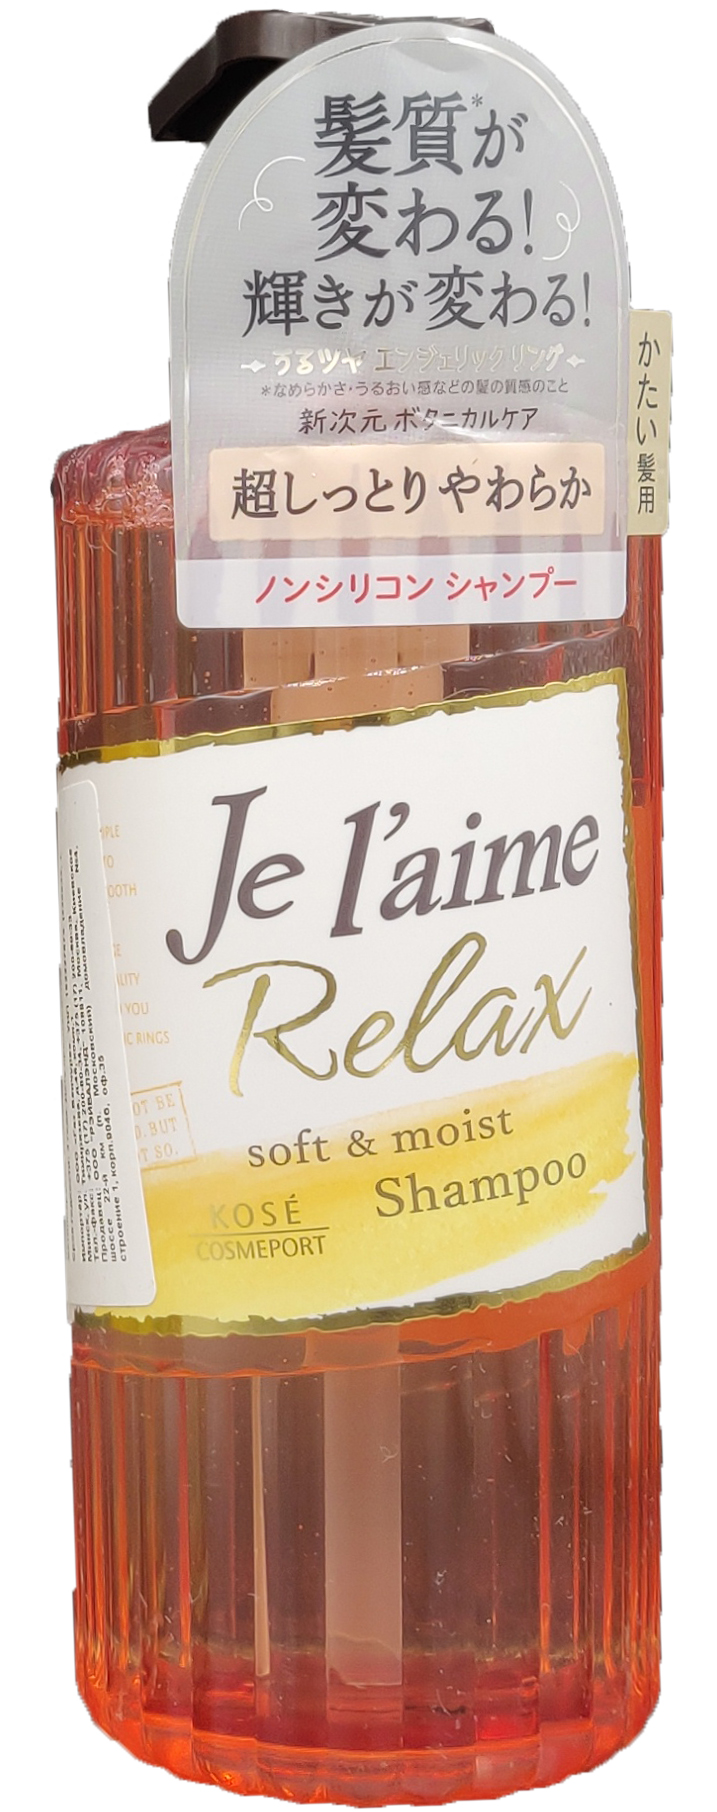 Kose Cosmeport Je l'aime Relax Soft & Moist Шампунь для жестких волос Мягкость и увлажнение с ягодно-цветочным ароматом 500 мл